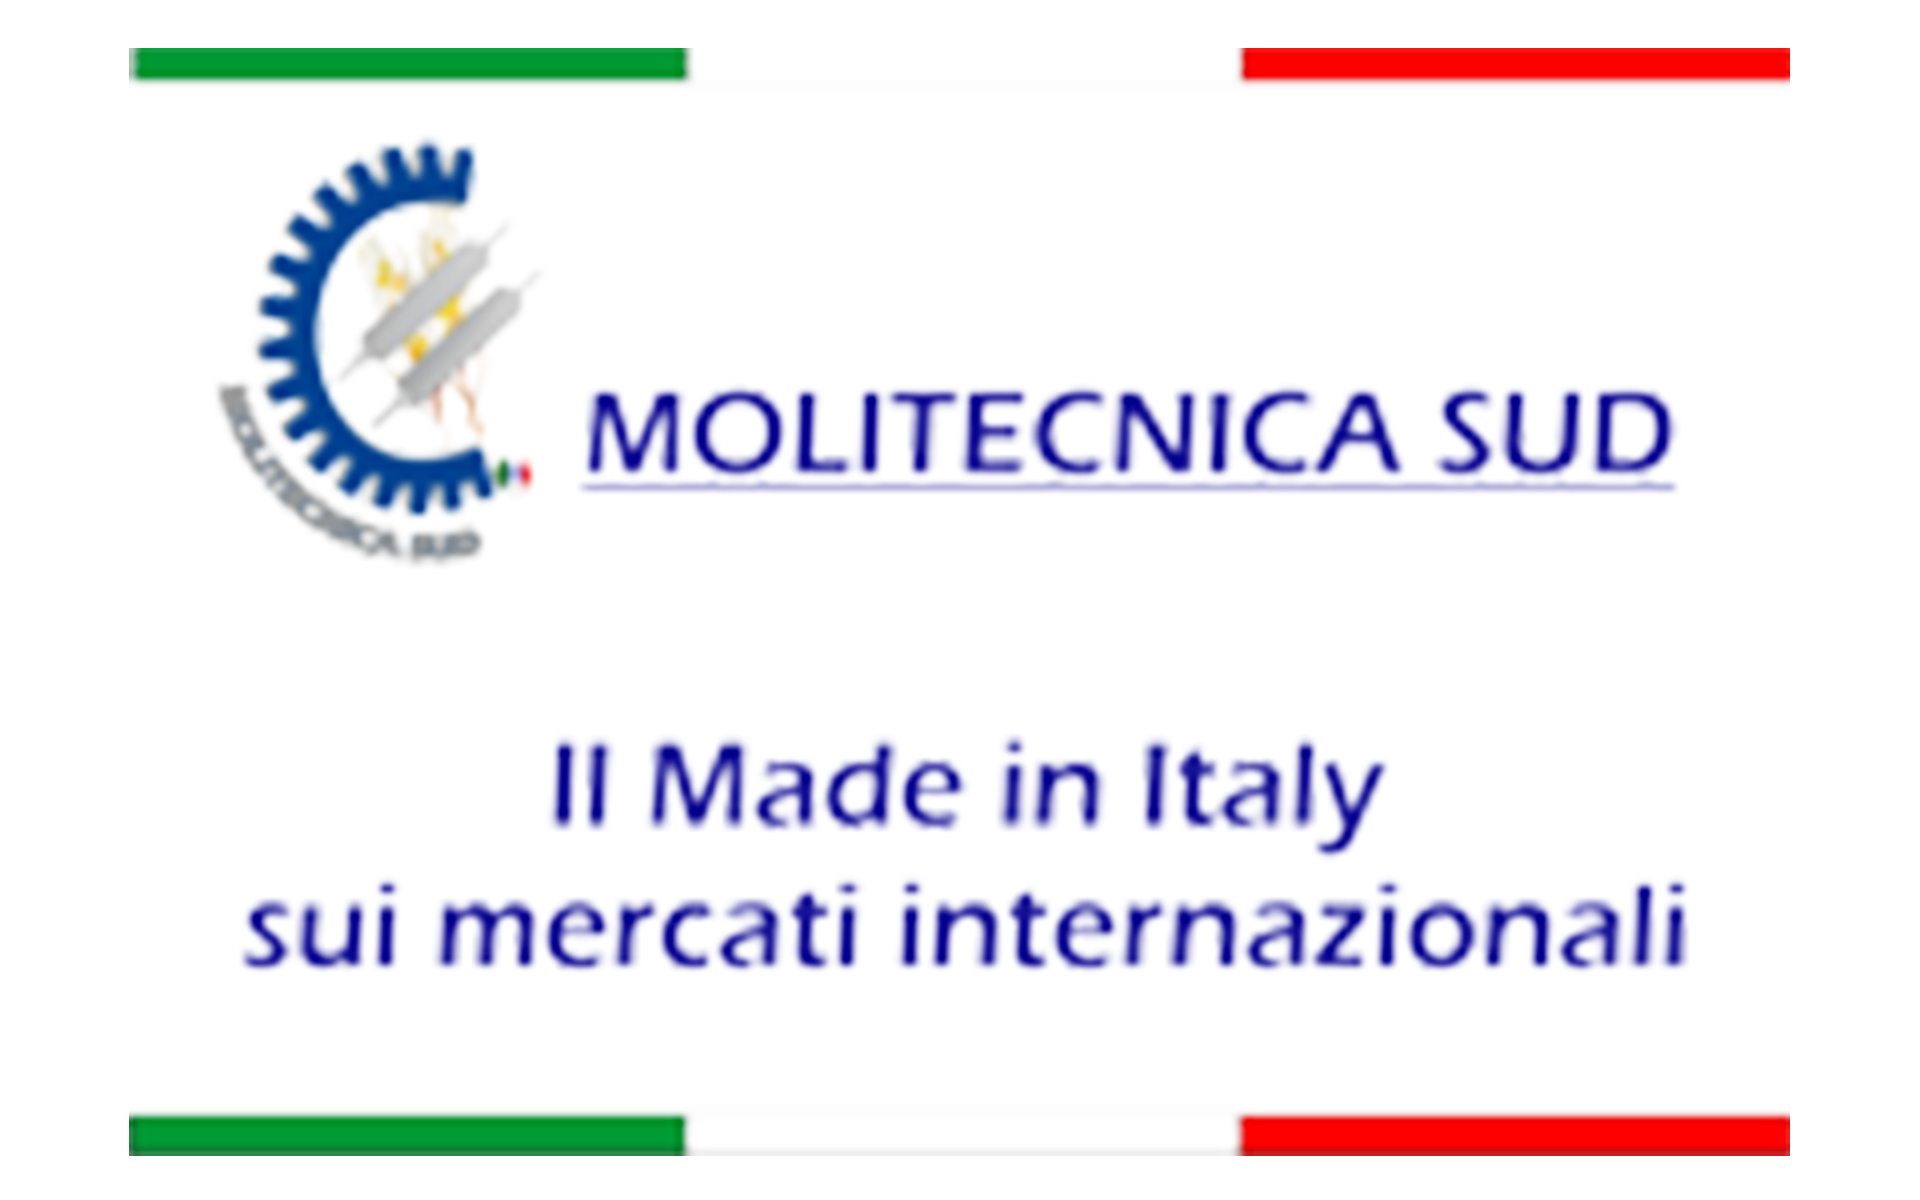 MOLITECNICA SUD: IL MADE IN ITALY AVANZA SUI MERCATI INTERNAZIONALI